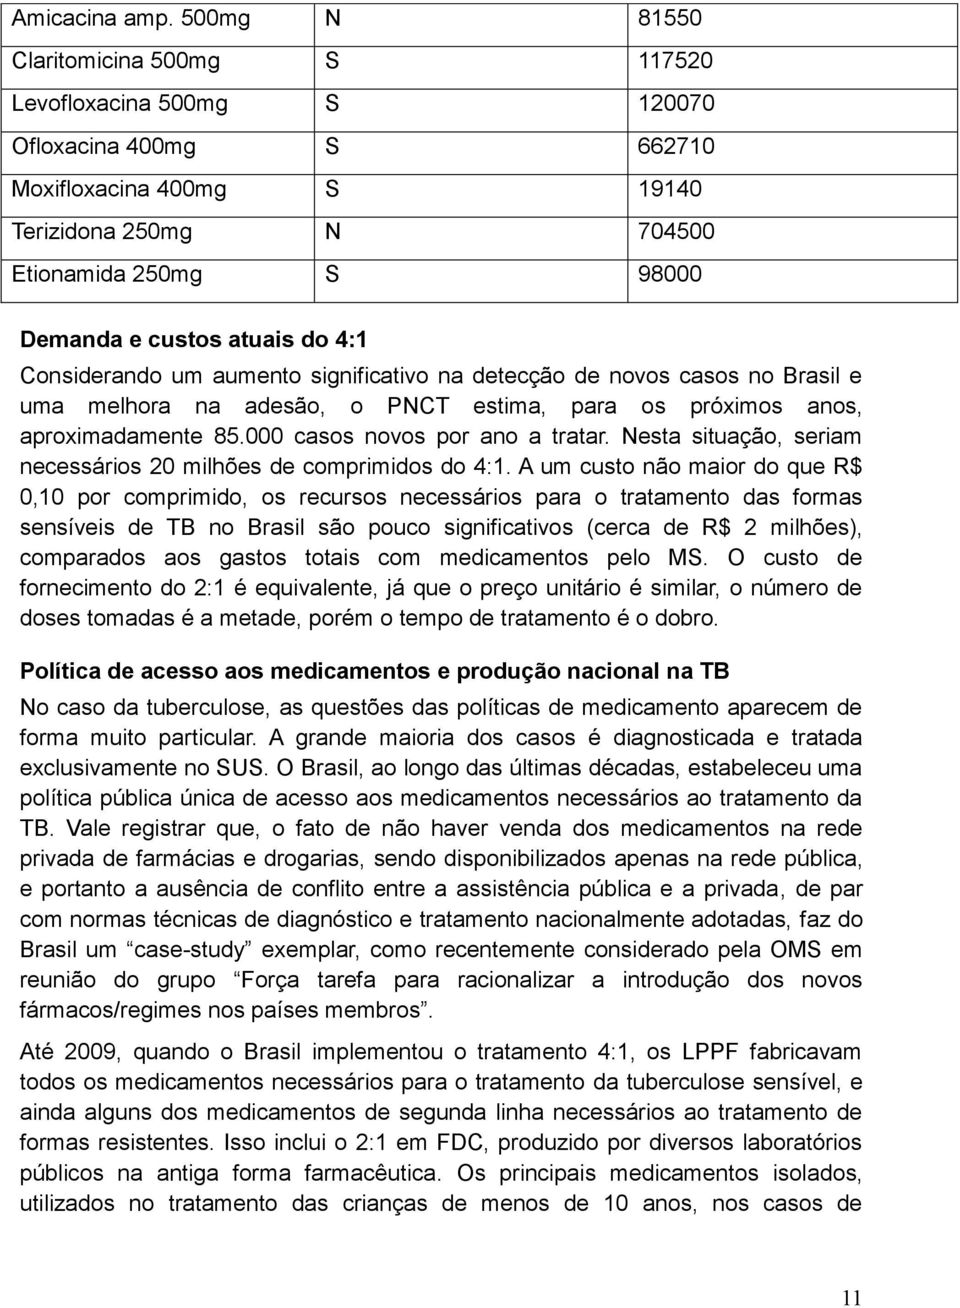 atuais do 4:1 Considerando um aumento significativo na detecção de novos casos no Brasil e uma melhora na adesão, o PNCT estima, para os próximos anos, aproximadamente 85.